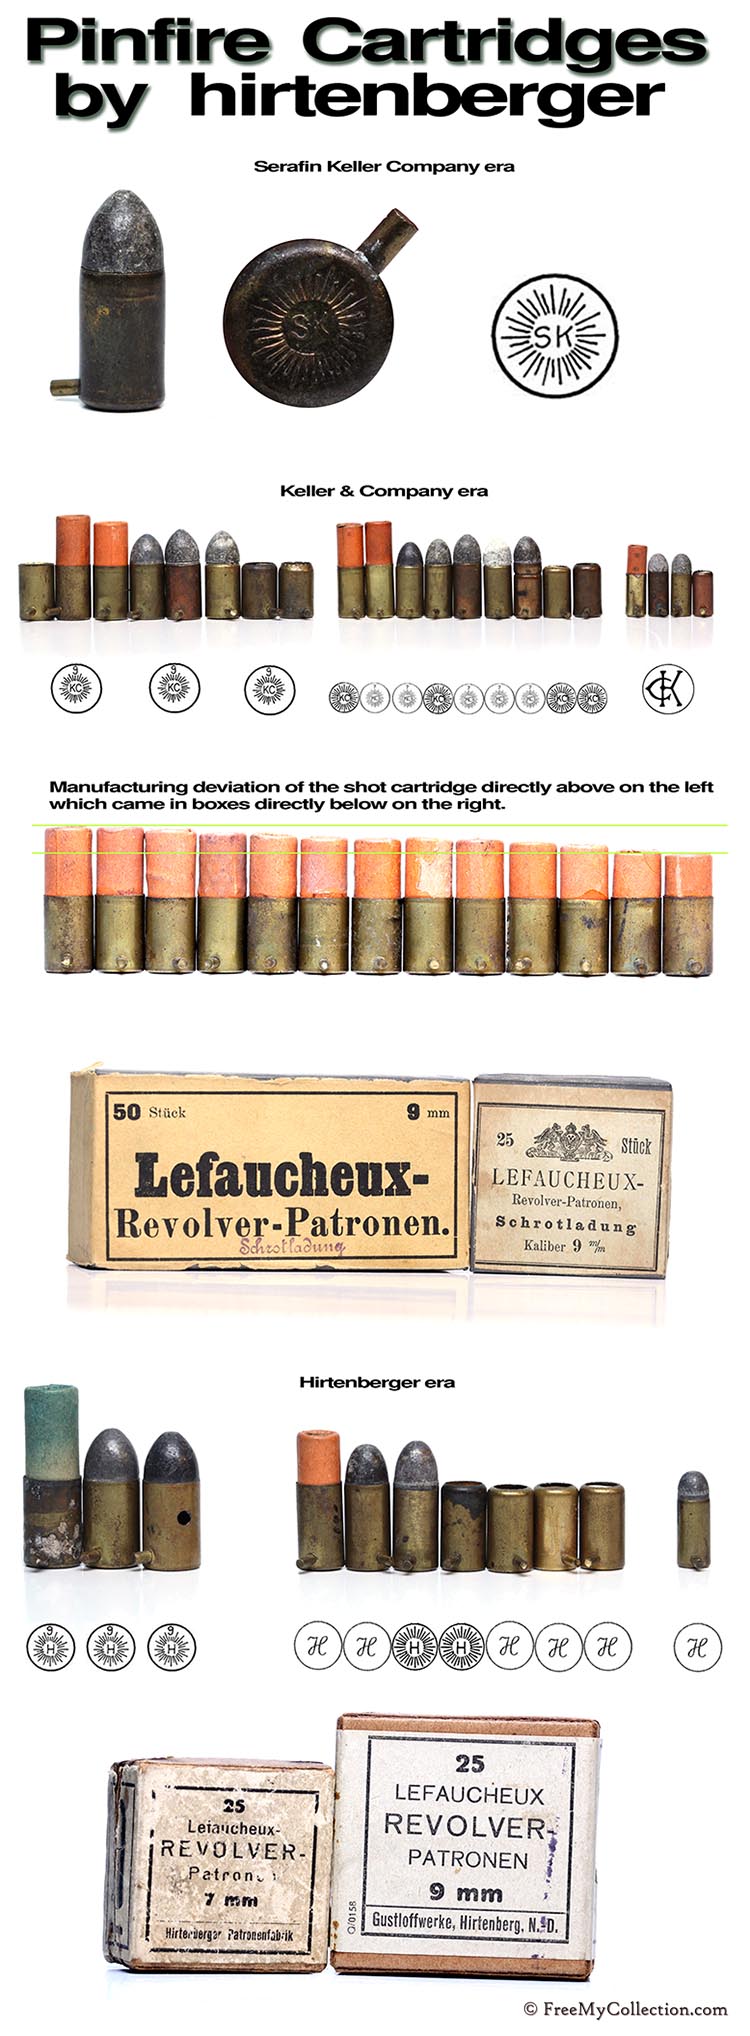 Hirtenberger Patronen Pinfire Cartridges